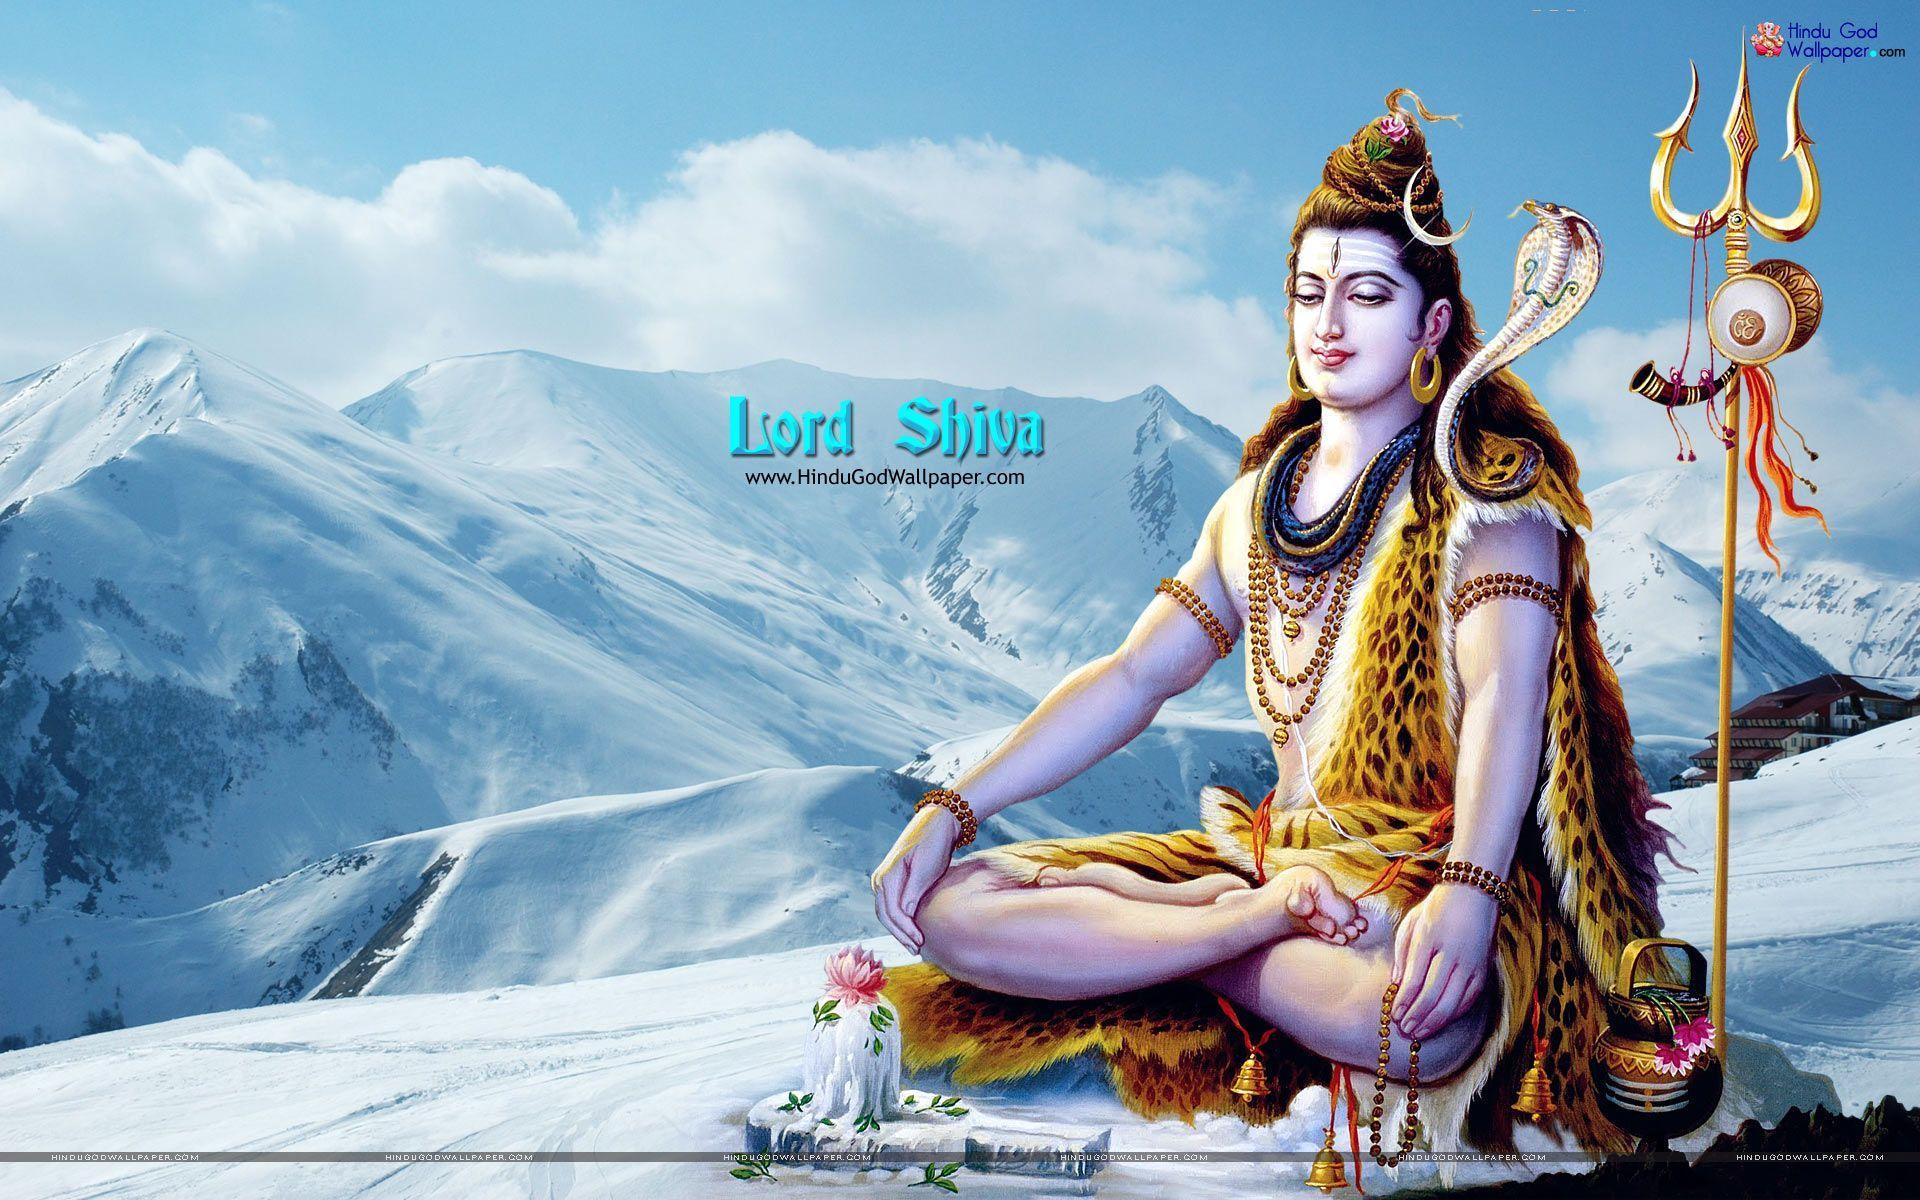 Hindu God Wallpaper: Lord Shiva Wallpaper, Picture \u0026